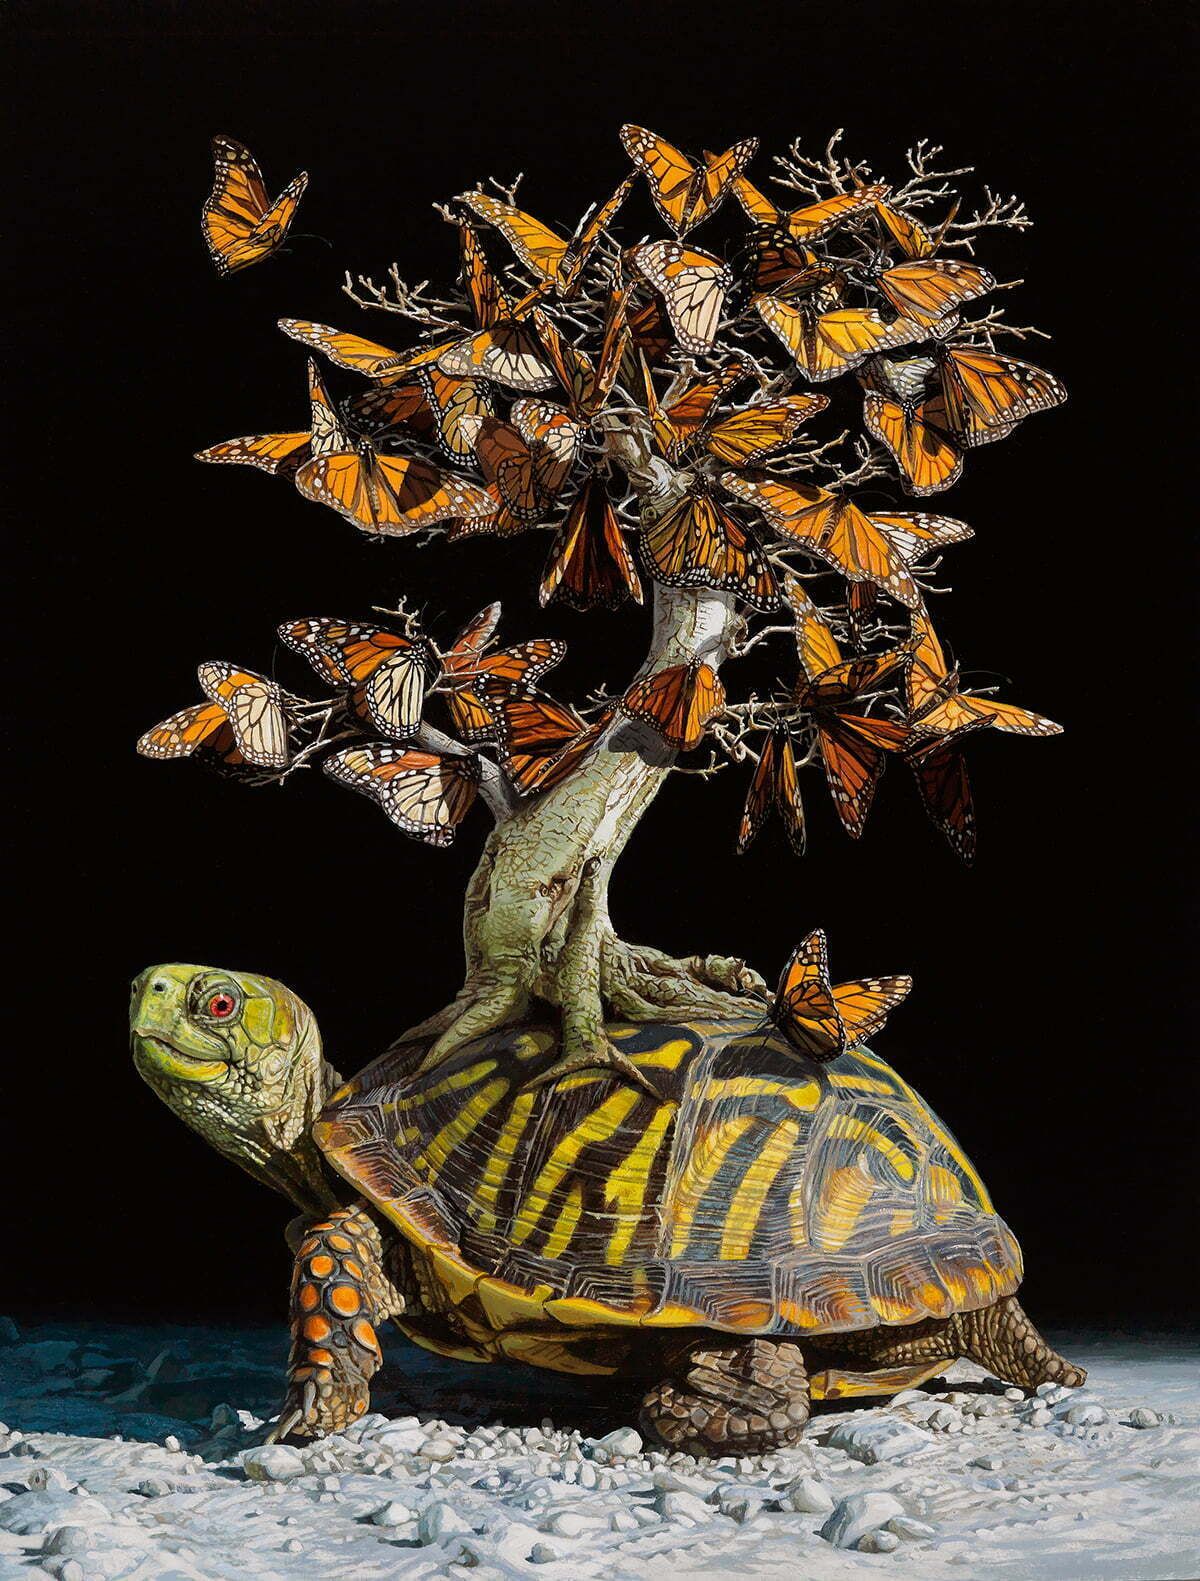 Фотограф си представя фантастични екосистеми, носени от костенурки